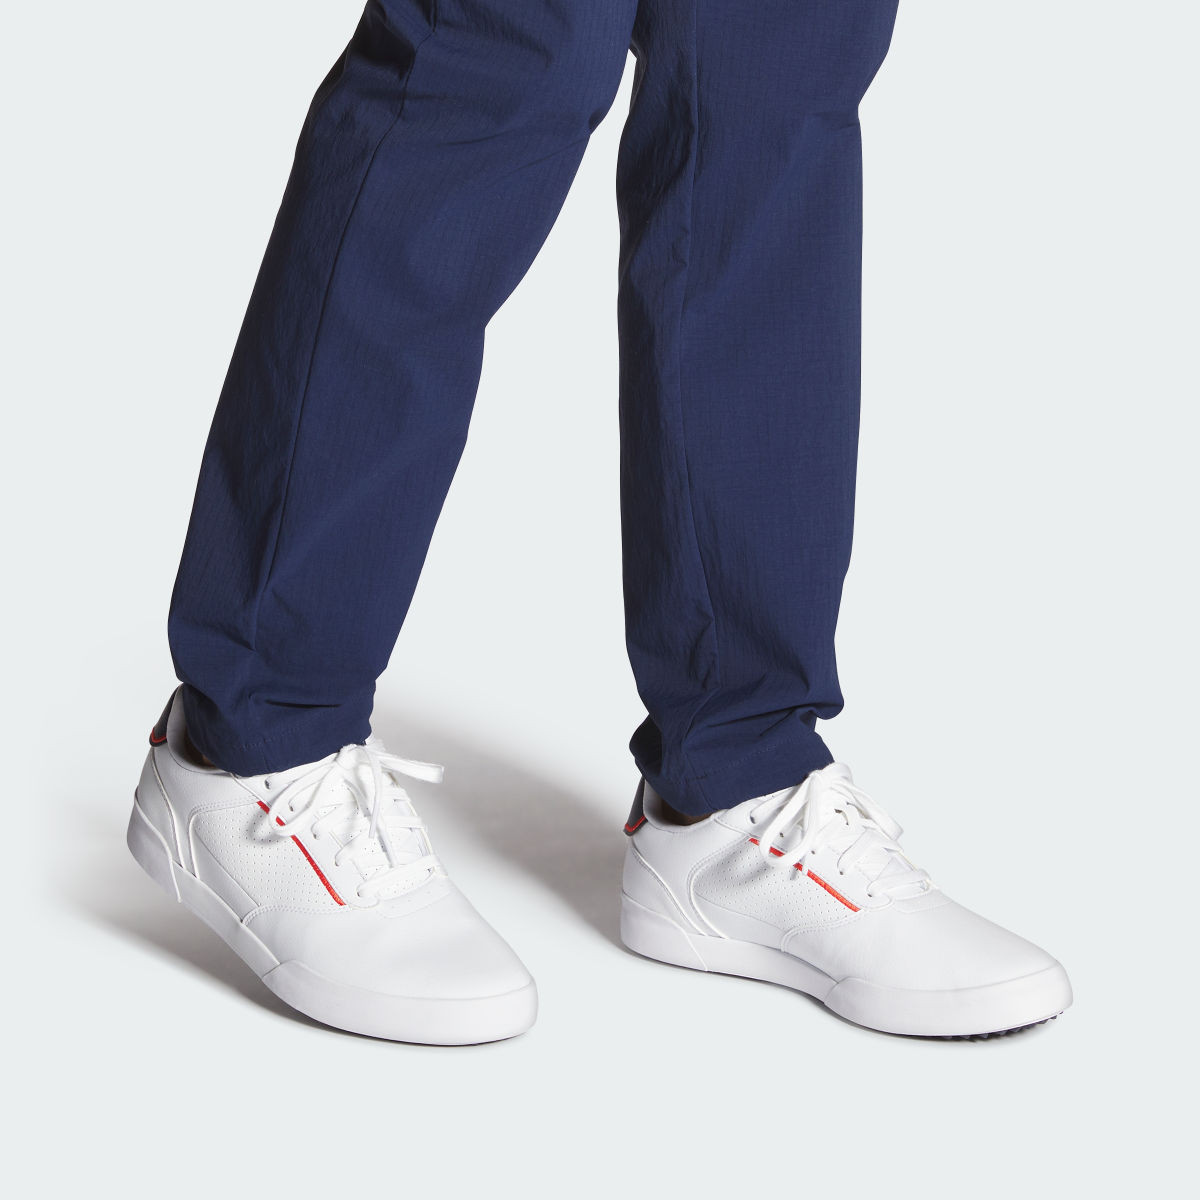 Adidas Retrocross Spikeless Golf Shoes. 5